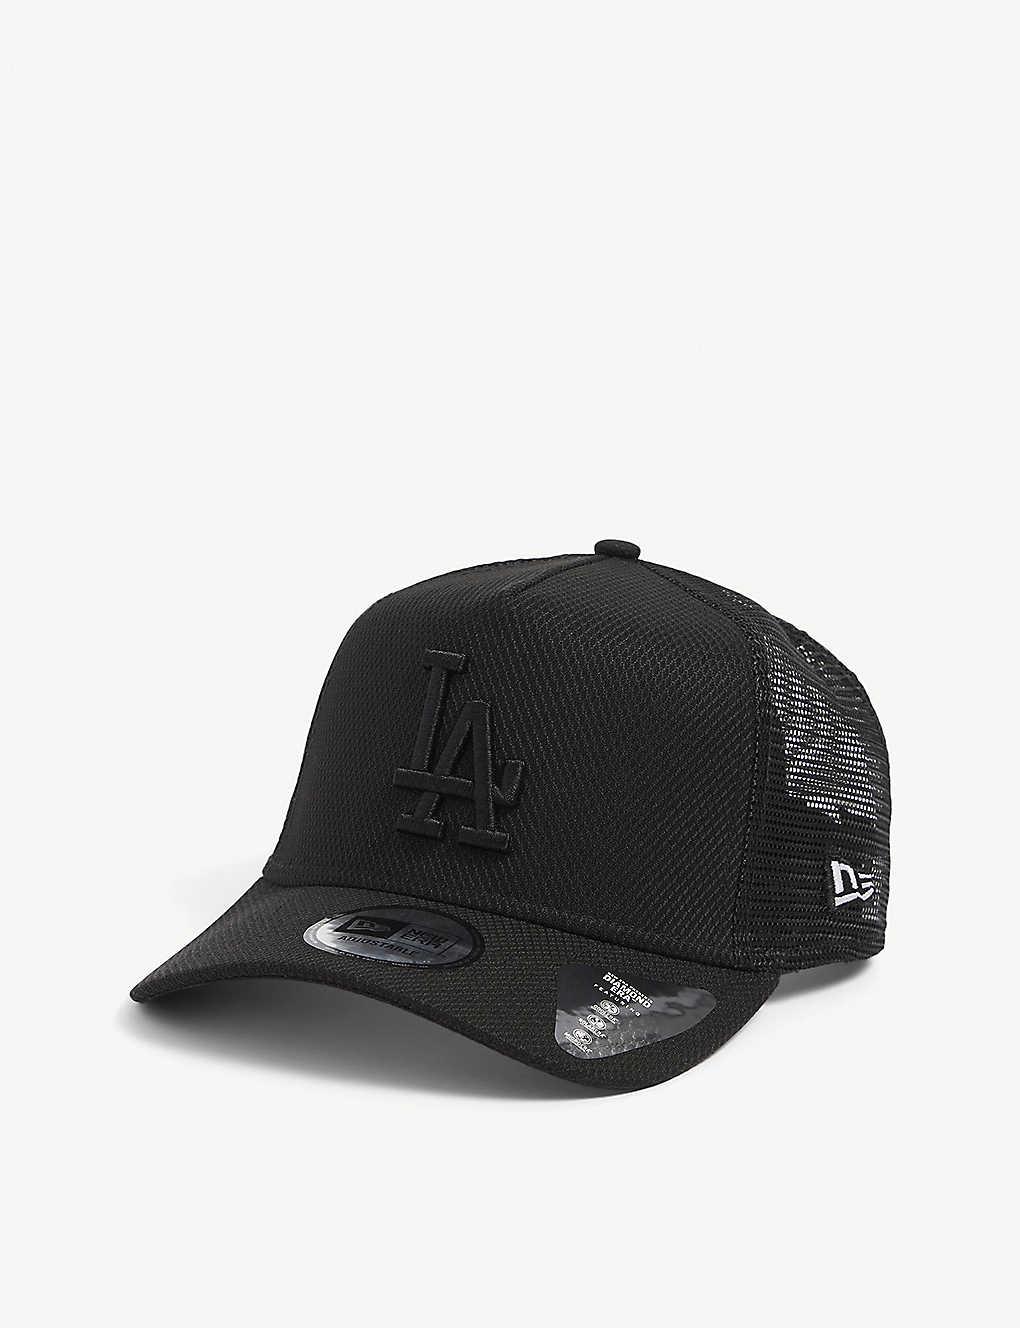 KTZ La Dodgers Mesh Trucker Hat in Black for Men